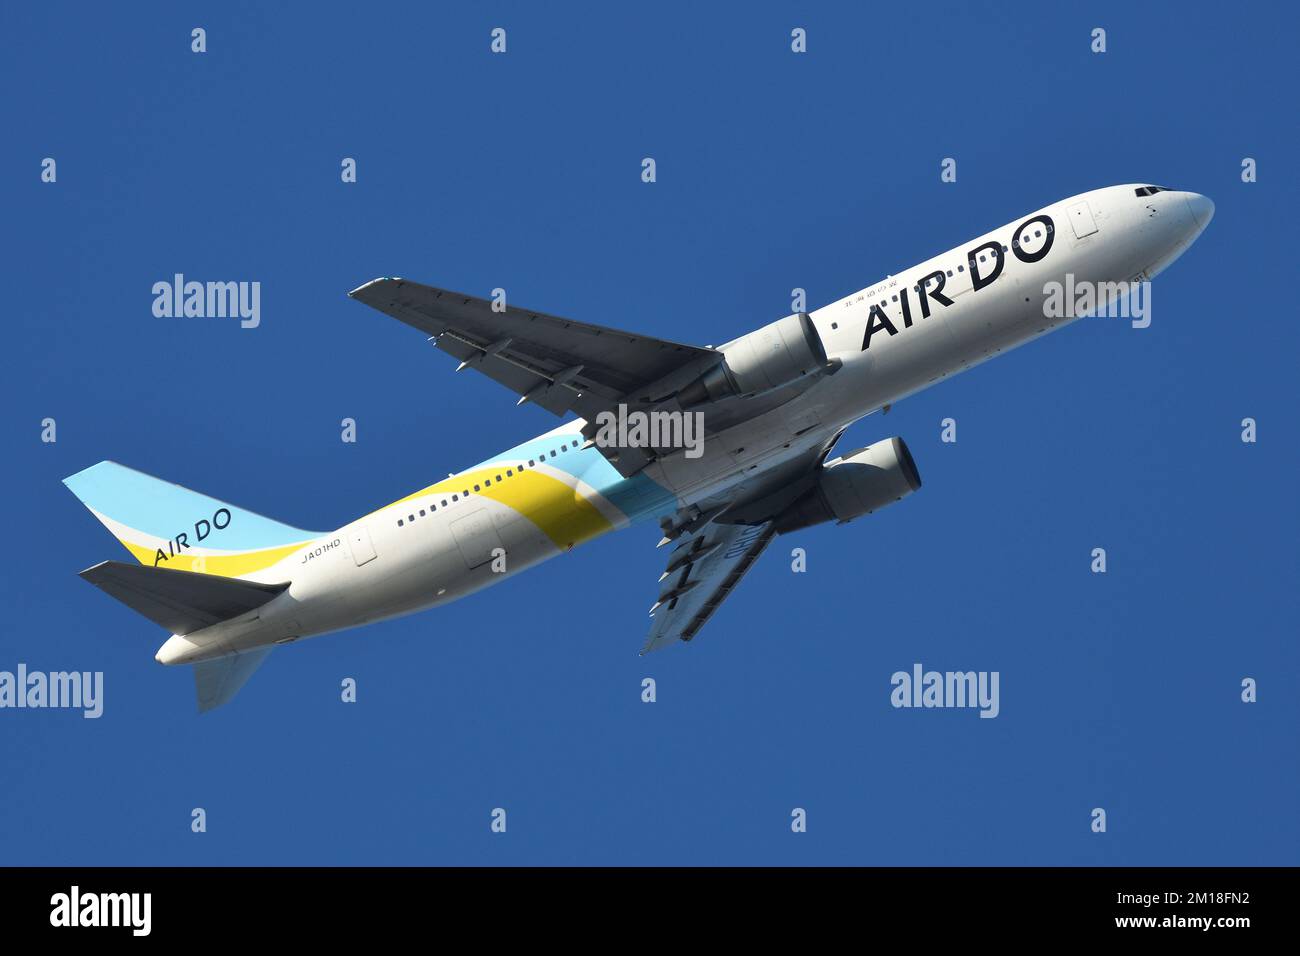 Tokyo, Japan - December 26, 2020: Air Do Boeing B767-300ER (JA01HD) passenger plane. Stock Photo